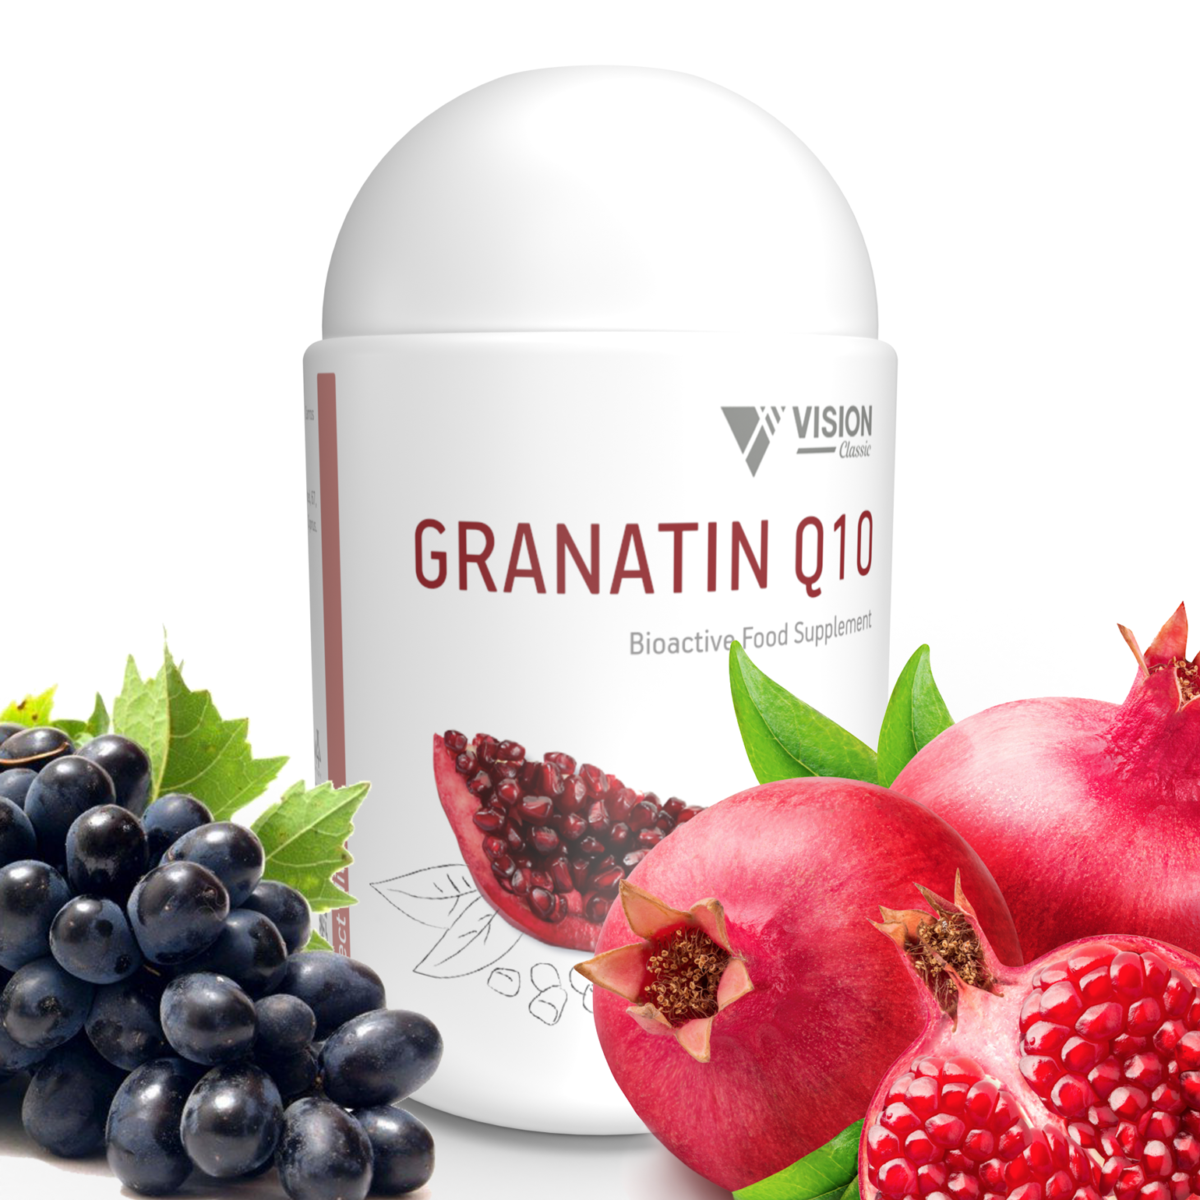 Granatin Q10